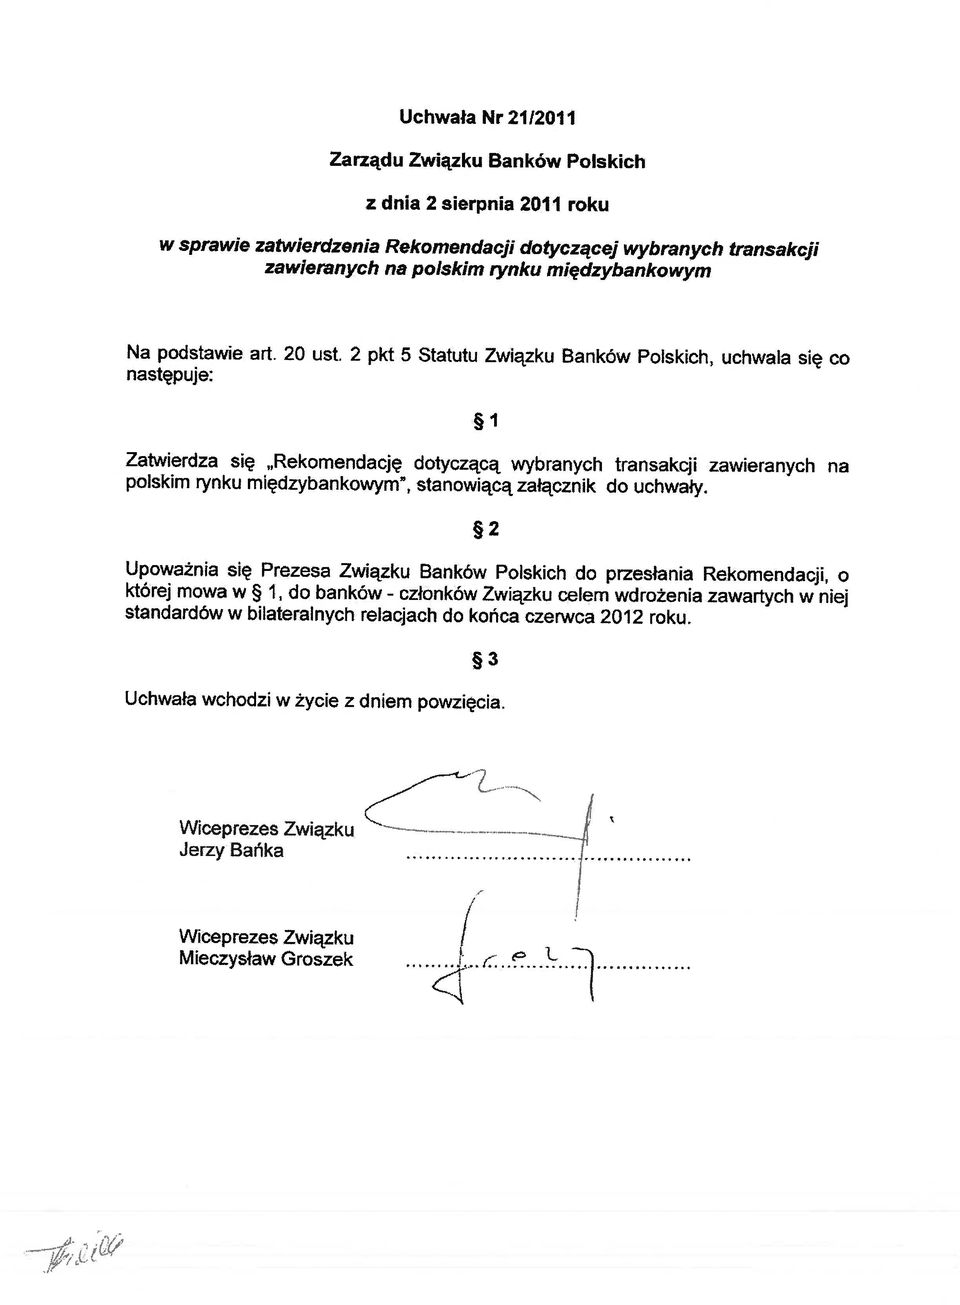 2 pkt 5 Statutu Związku Banków Polskich, uchwala się co następuje: Zatwierdza się Rekomendację dotyczącą wybranych transakcji zawieranych na polskim rynku międzybankowym~, stanowiącą załącznik do